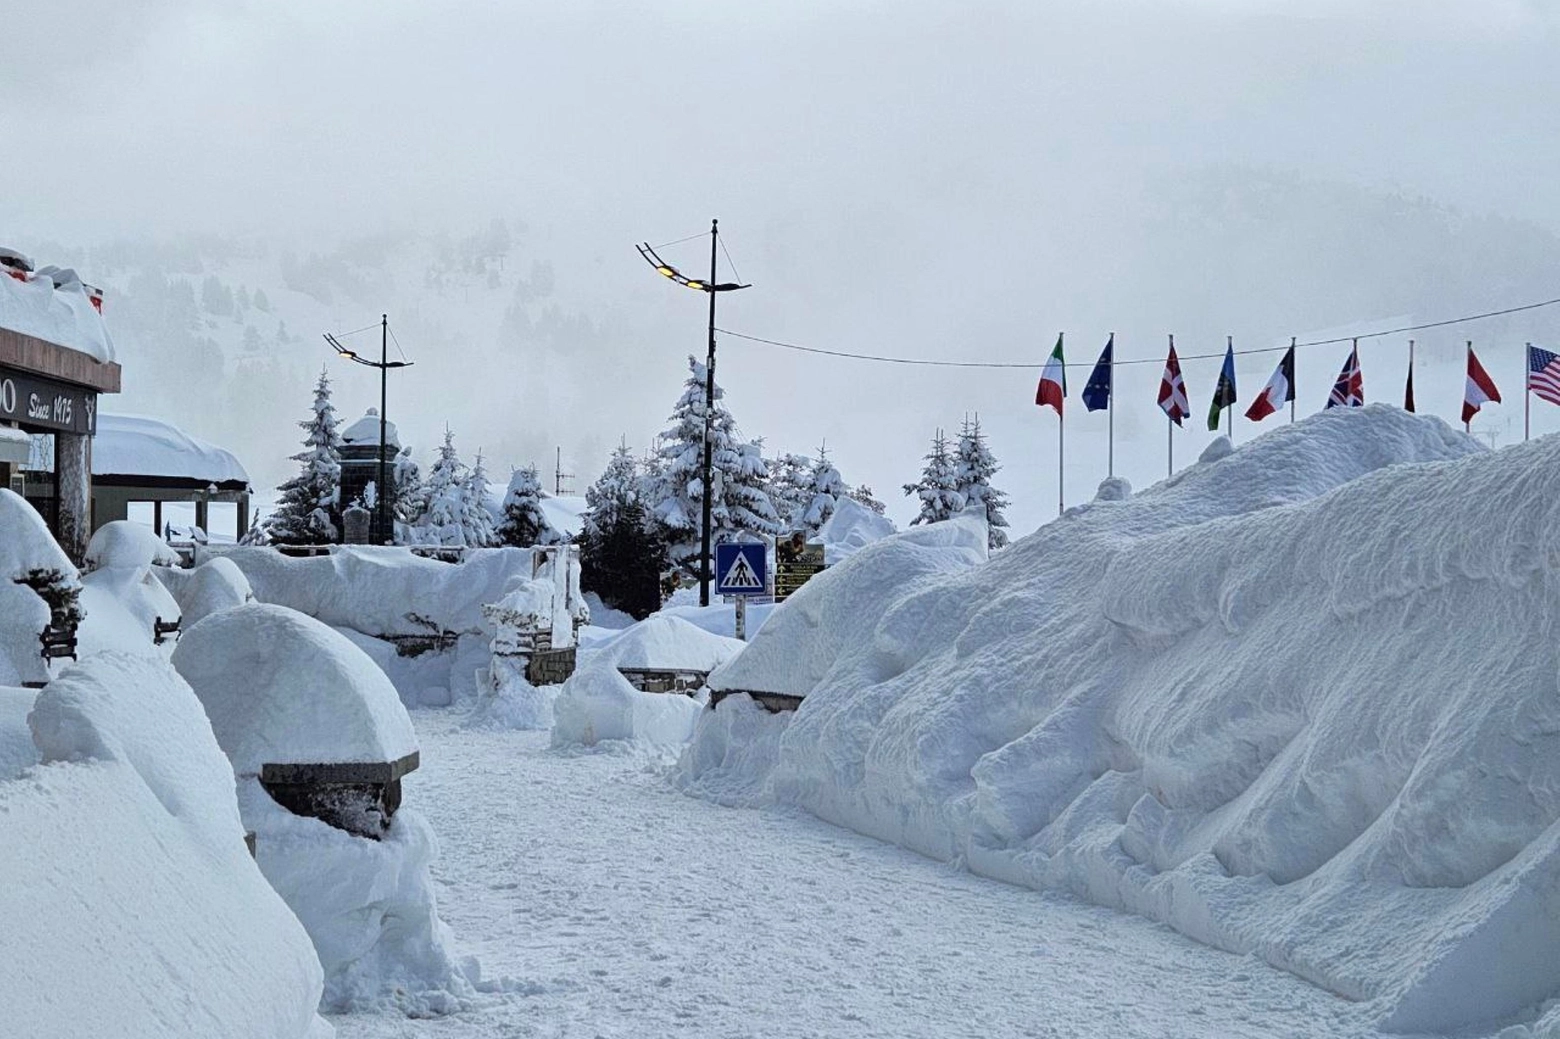 Le spettacolari immagini di Sestriere ricoperto da quasi 2 metri di neve dopo le intense nevicate degli ultimi giorni